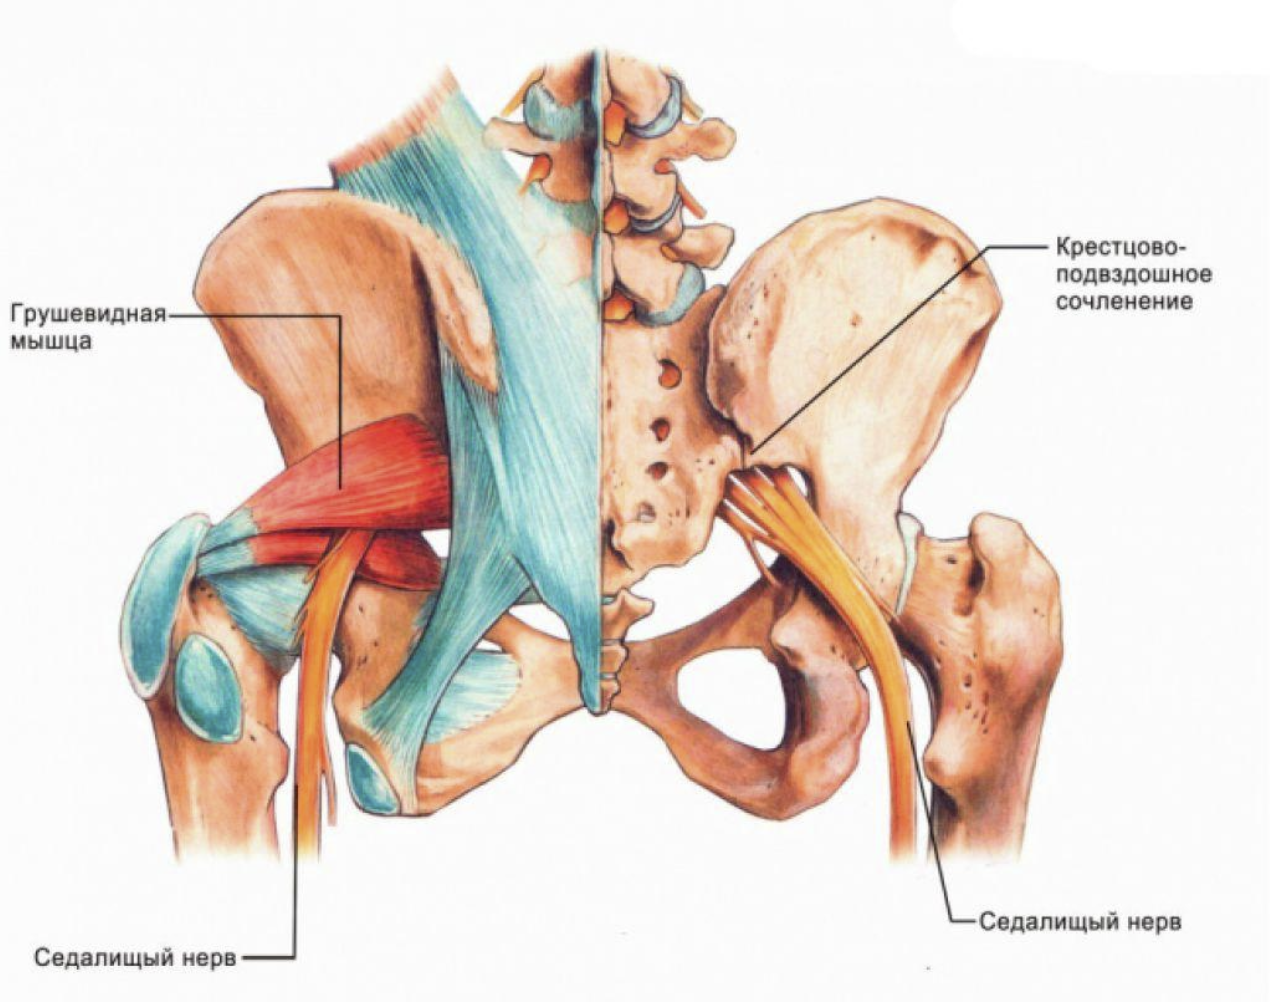 Сильные боли седалищных. Строение мышц таза седалищный нерв. Строение тазобедренного сустава с мышцами и связками. Тазобедренный сустав анатомия грушевидная мышца.